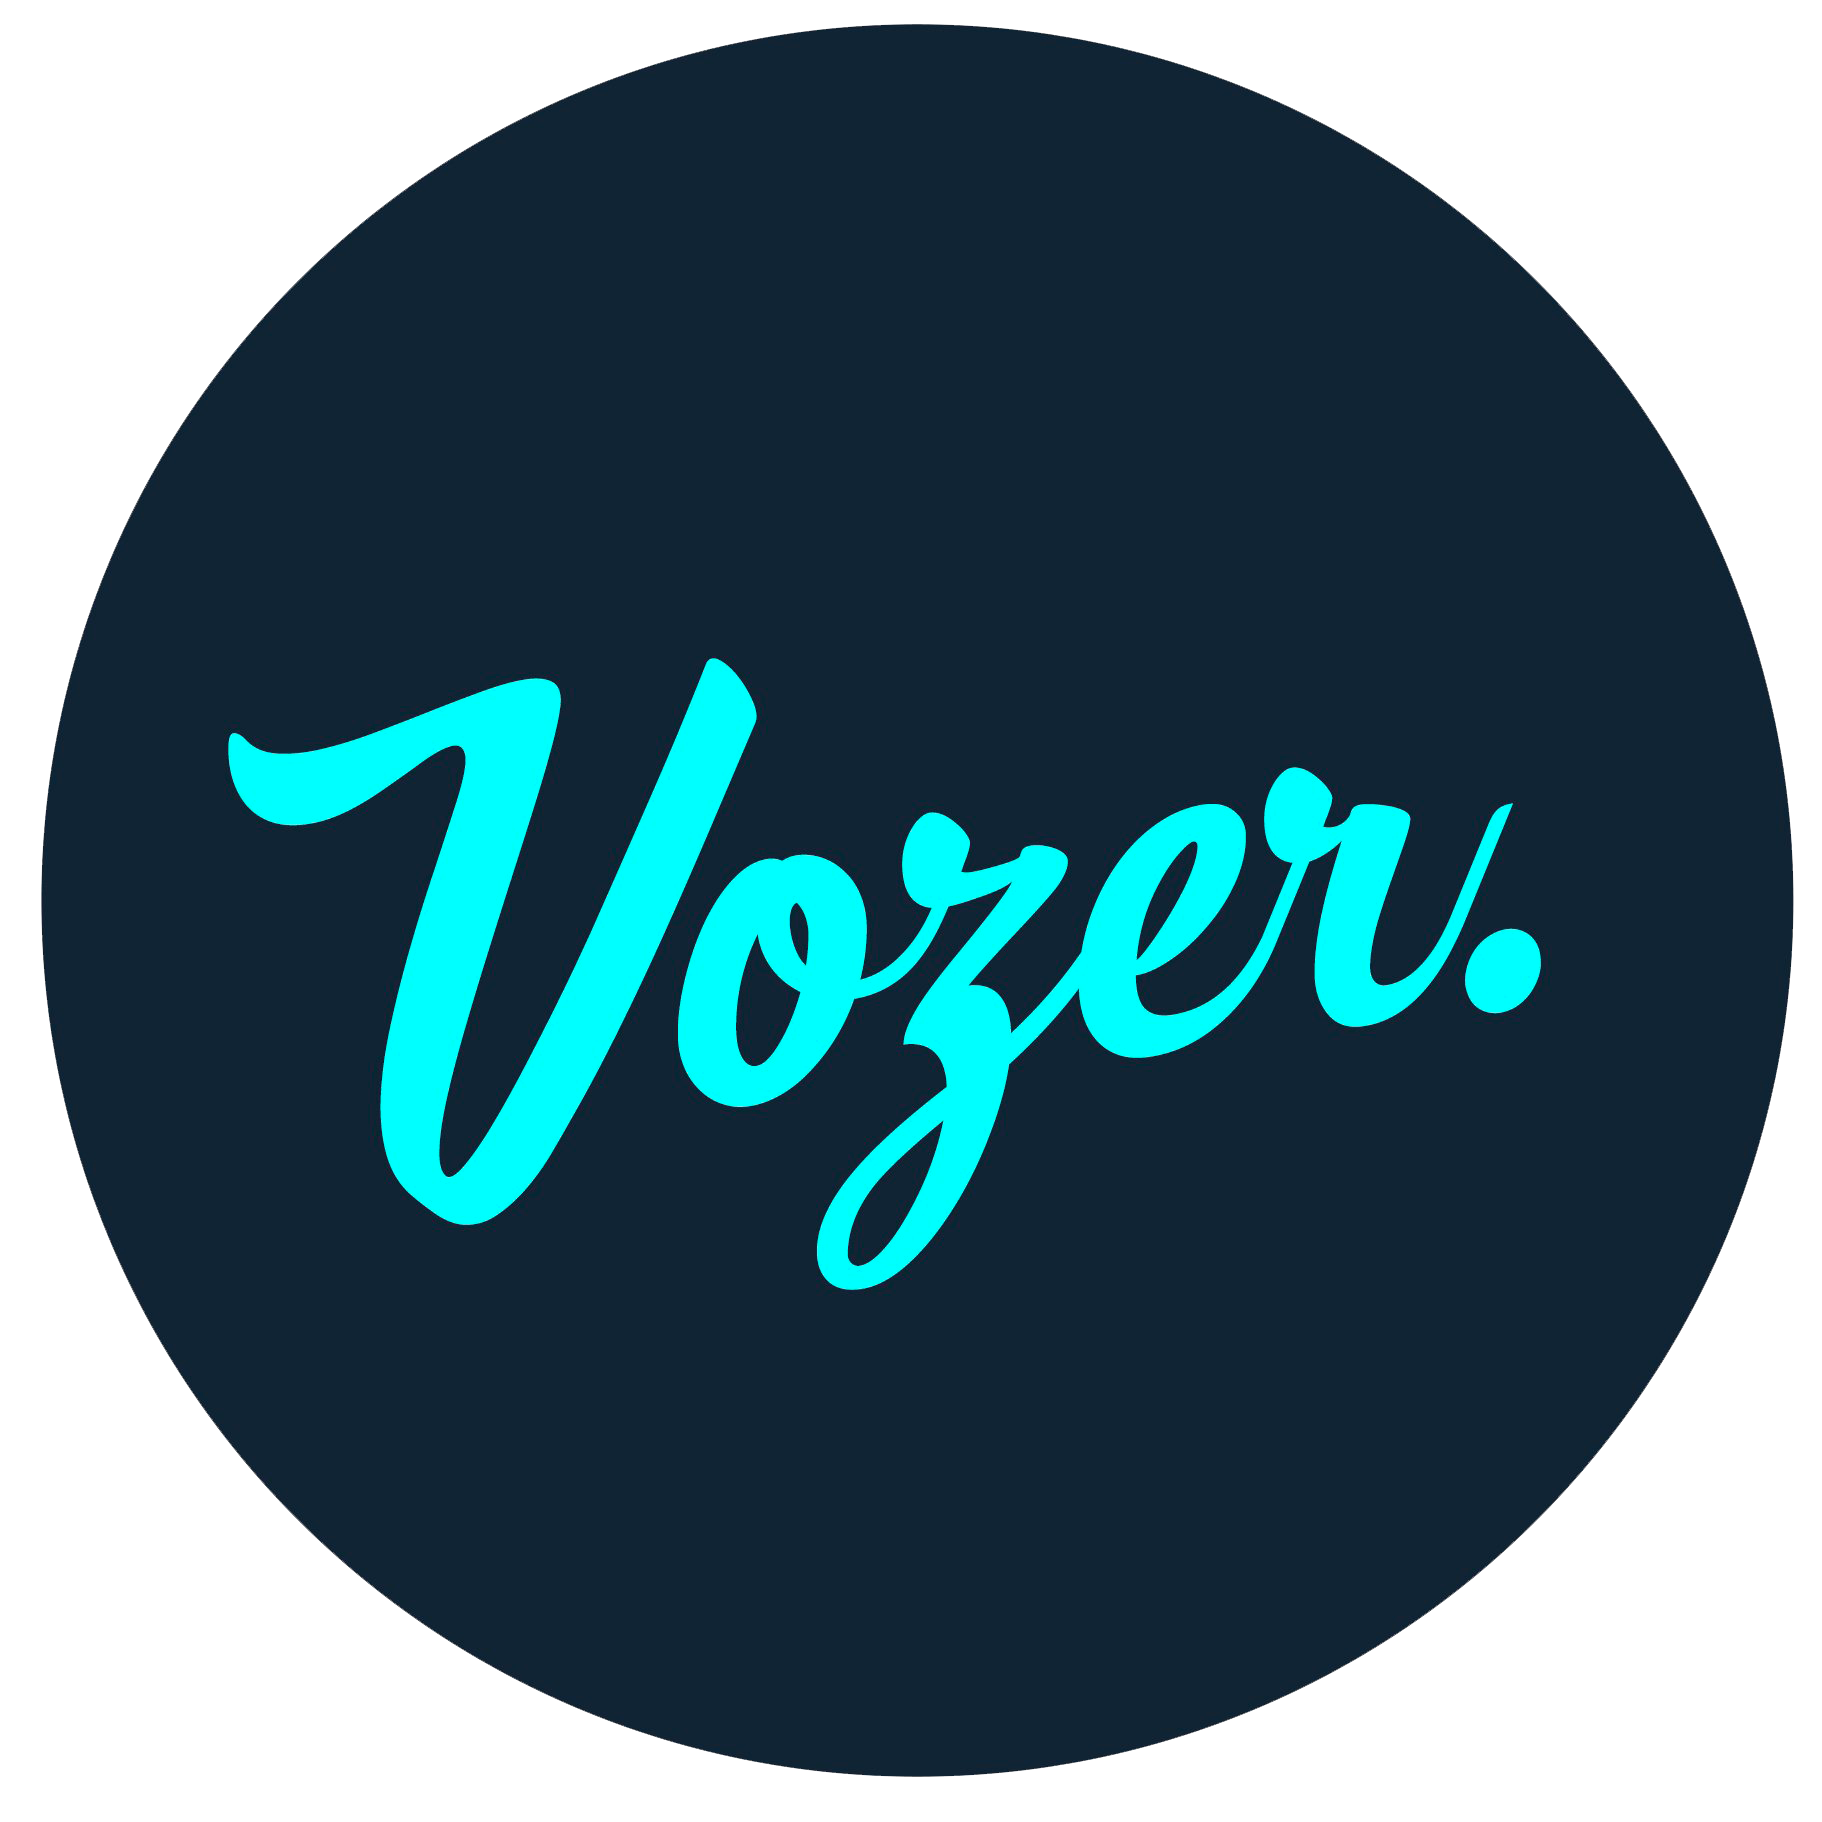 Vozer và những điều bạn chưa biết